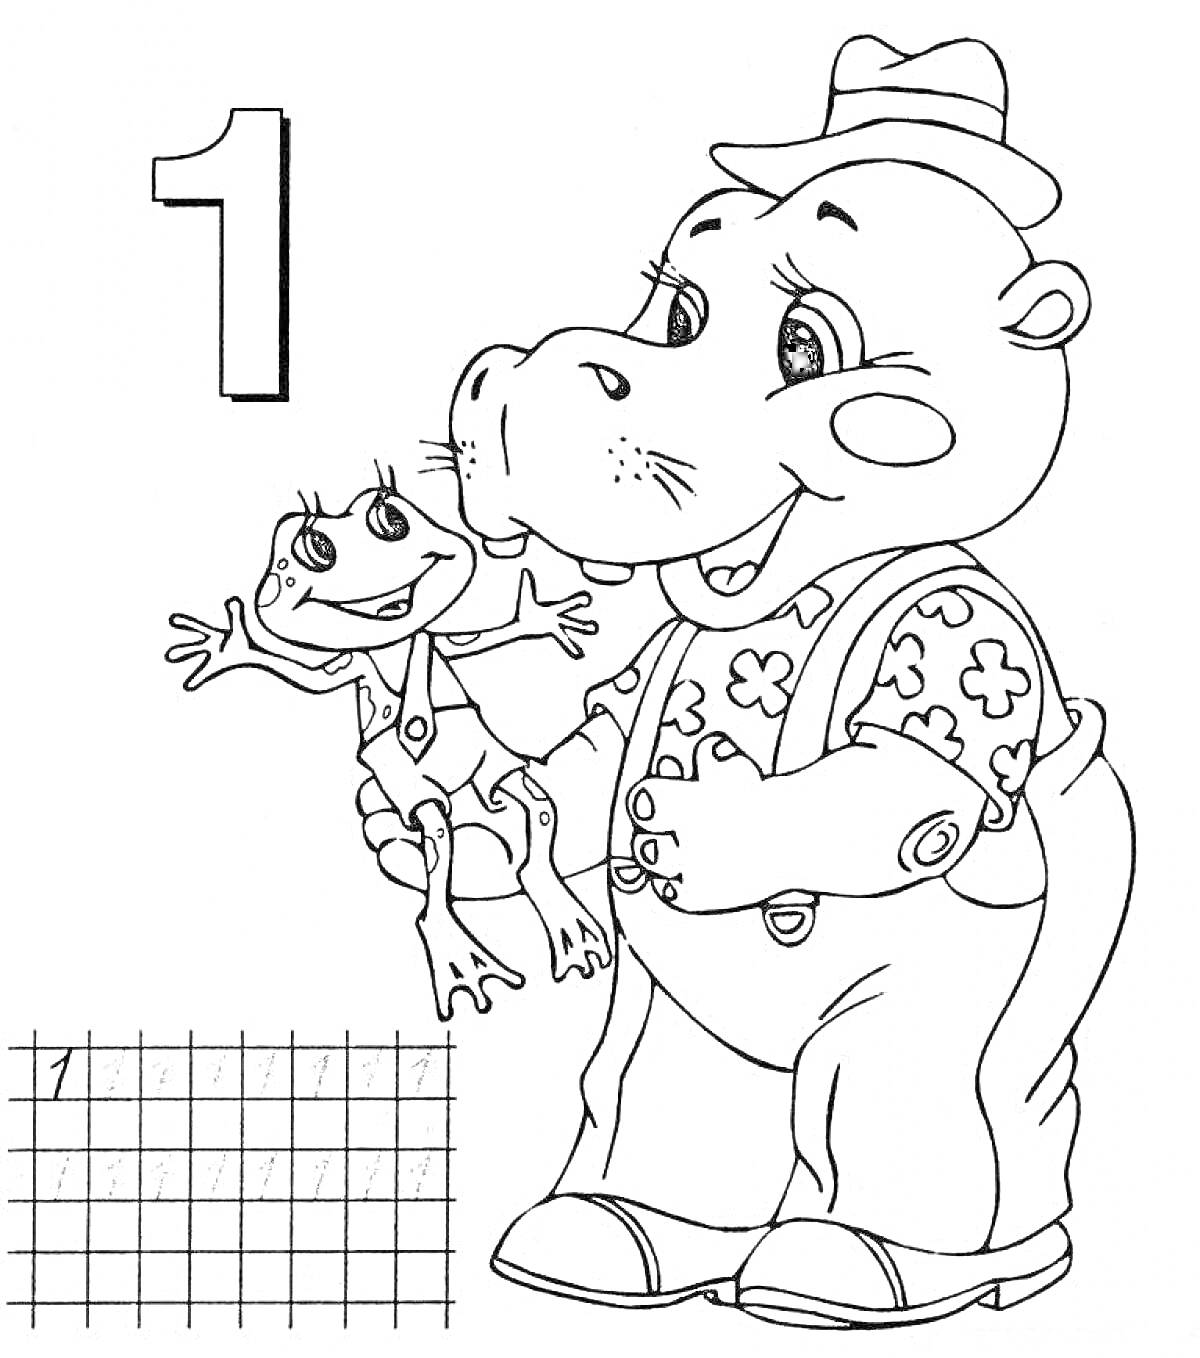 Раскраска бегемот в шляпе и рубашке держит лягушонка с бантом, цифра 1, решетчатое поле